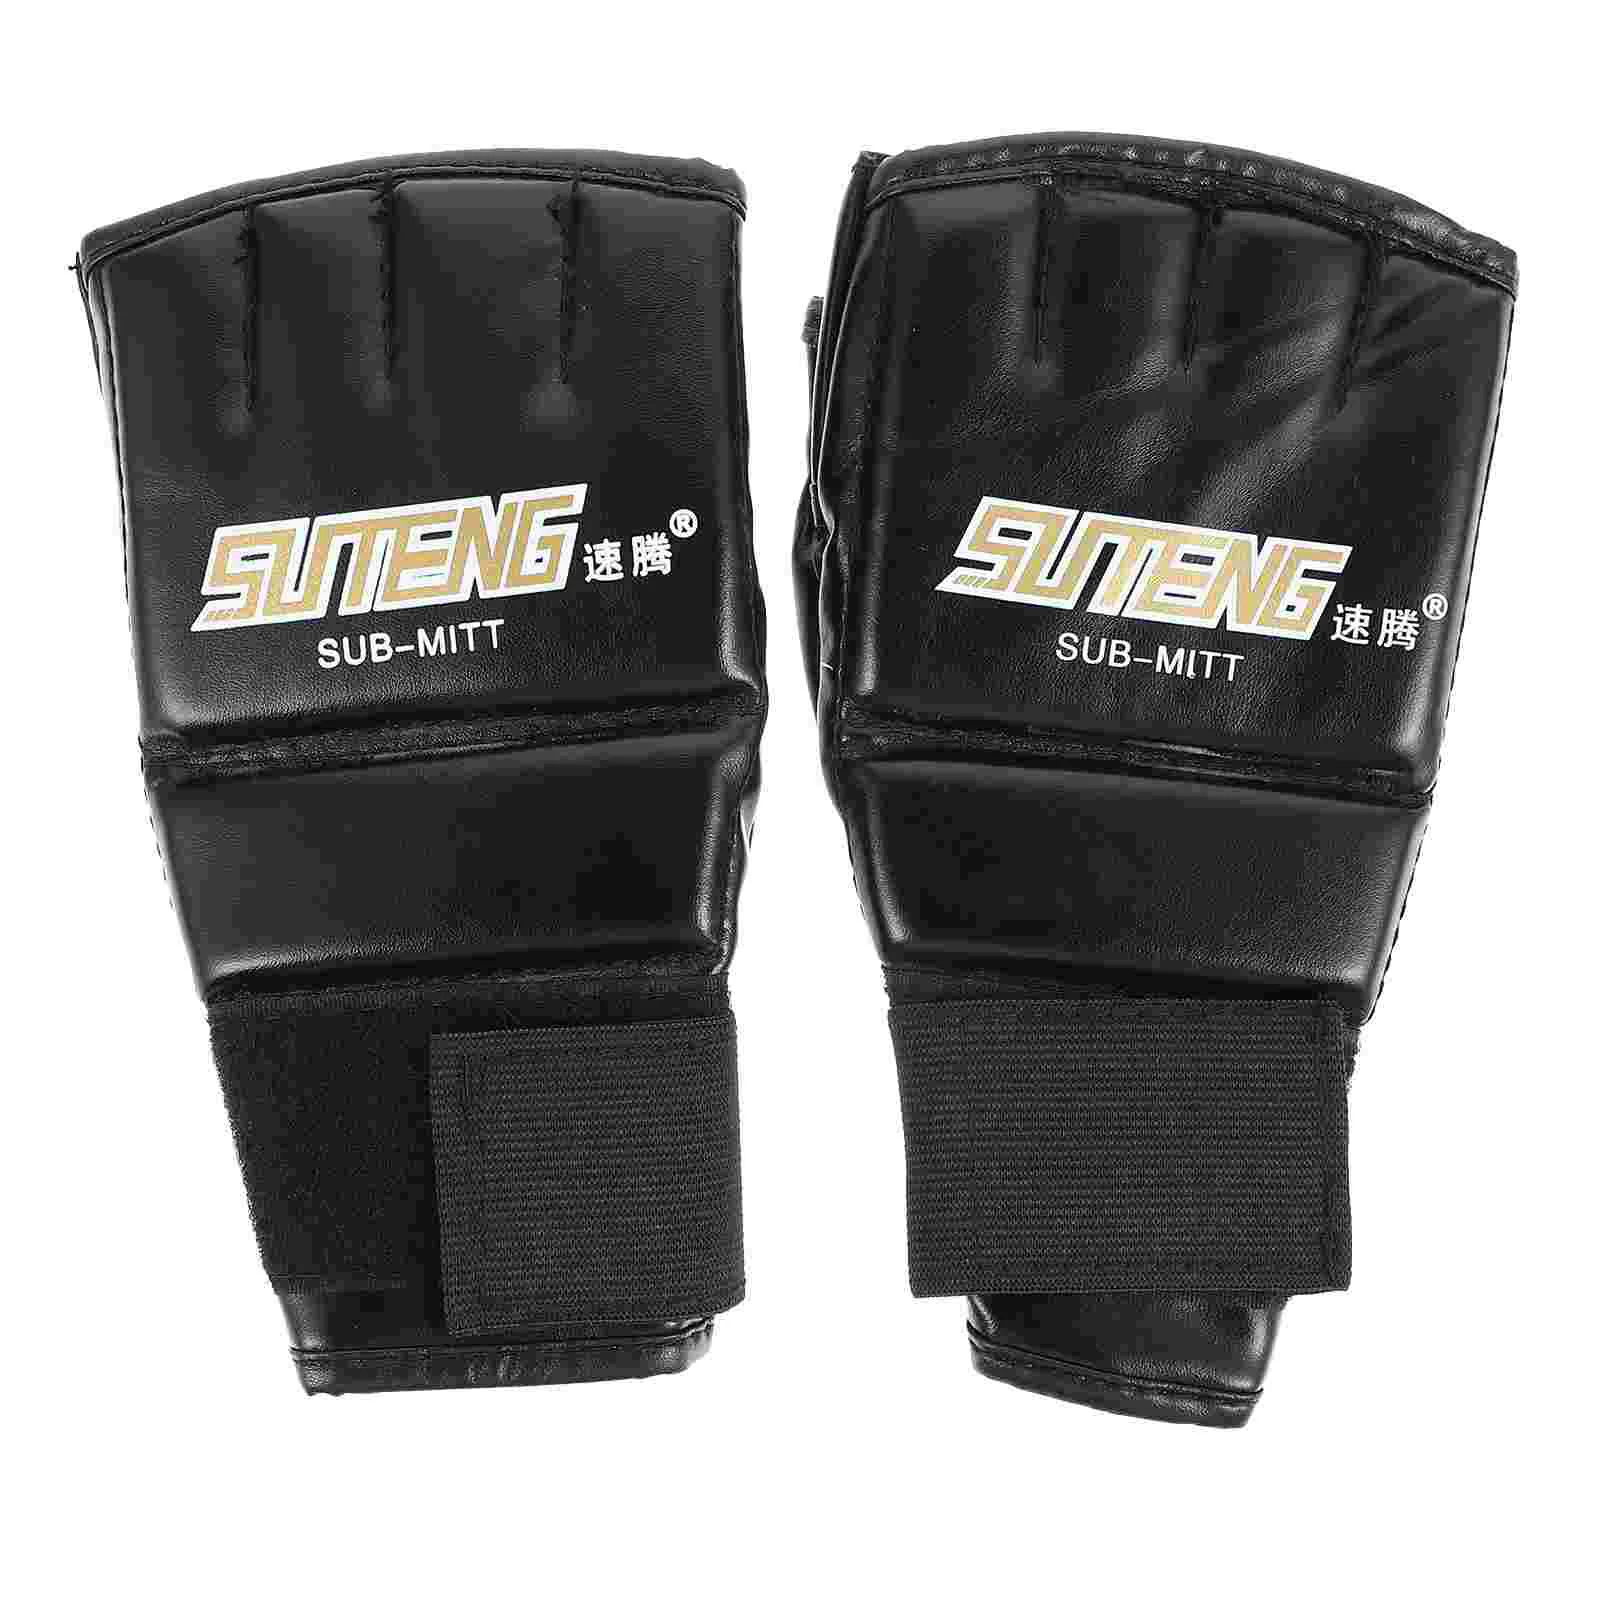 Спортивные боксерские перчатки, женские тренировочные рукавицы, аксессуар для кикбоксинга из искусственной кожи 0